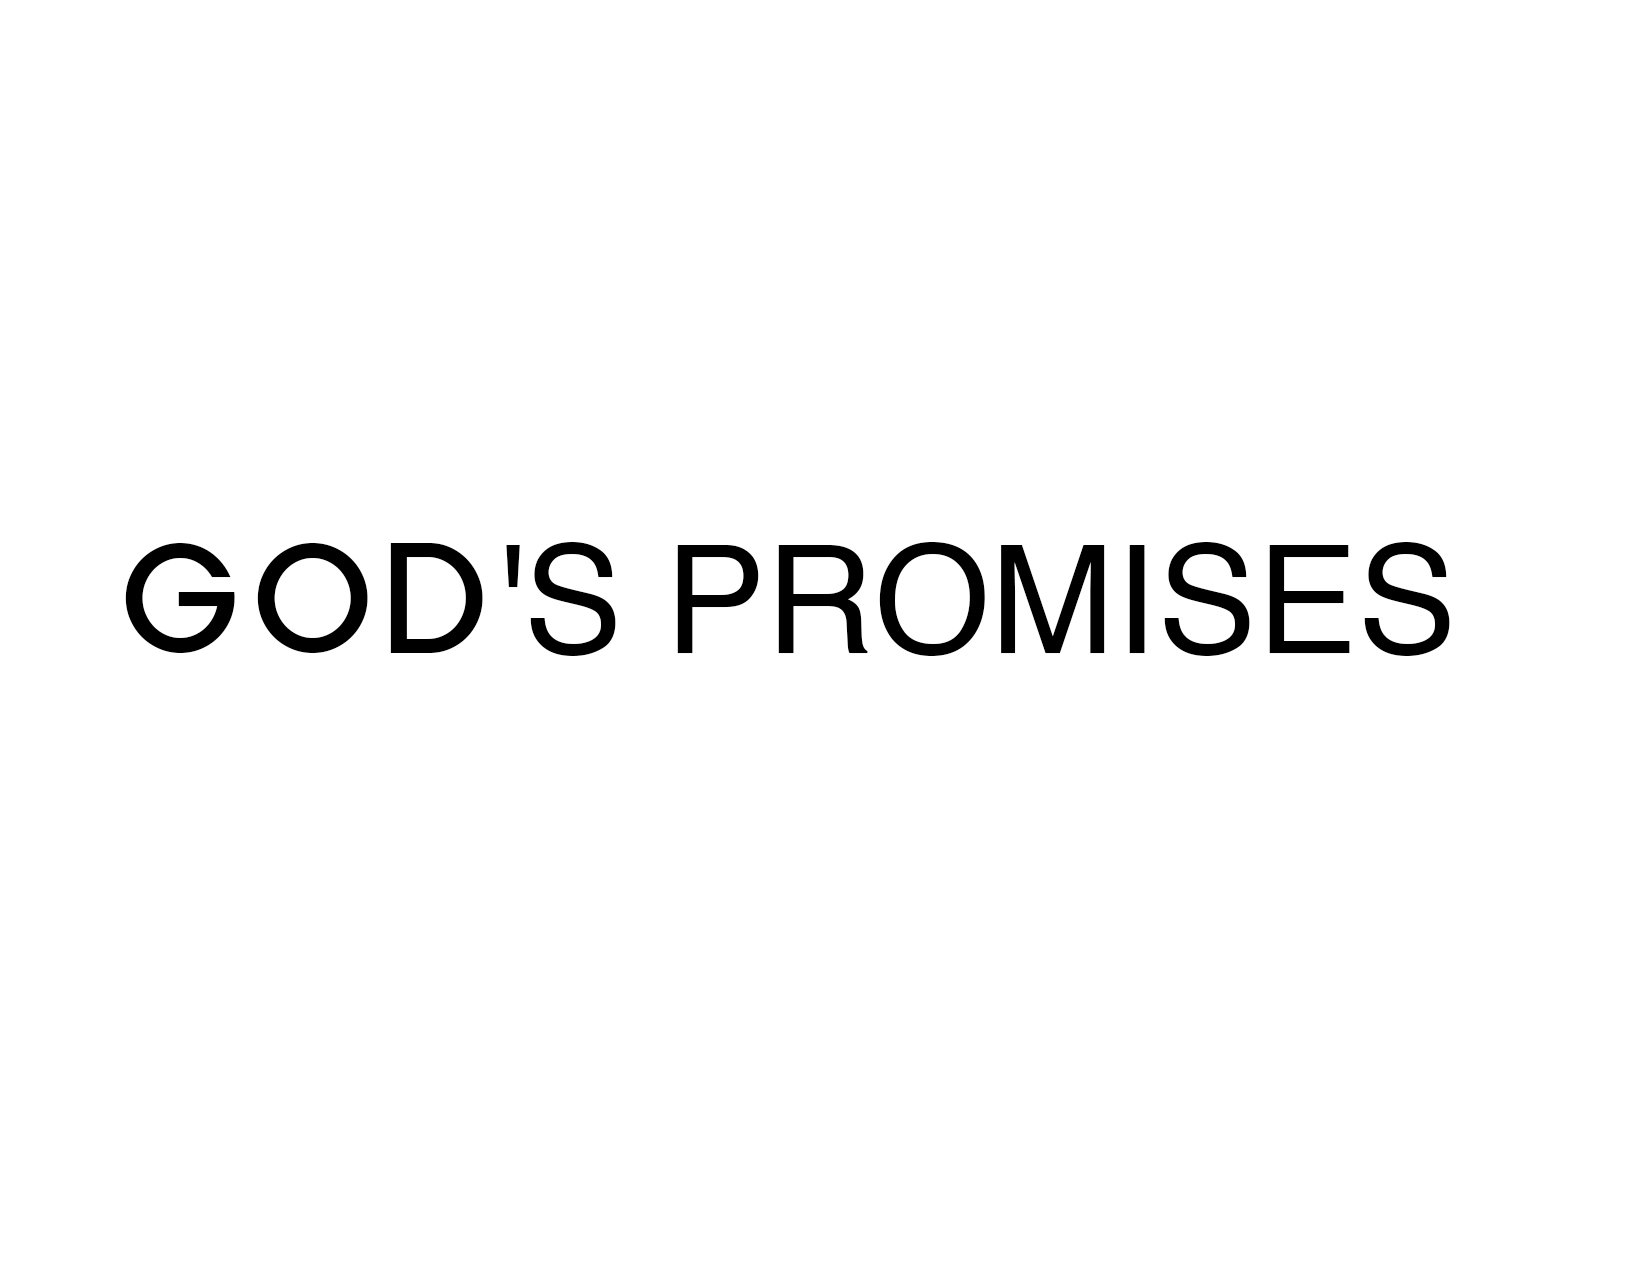 Contending for God’s Promises